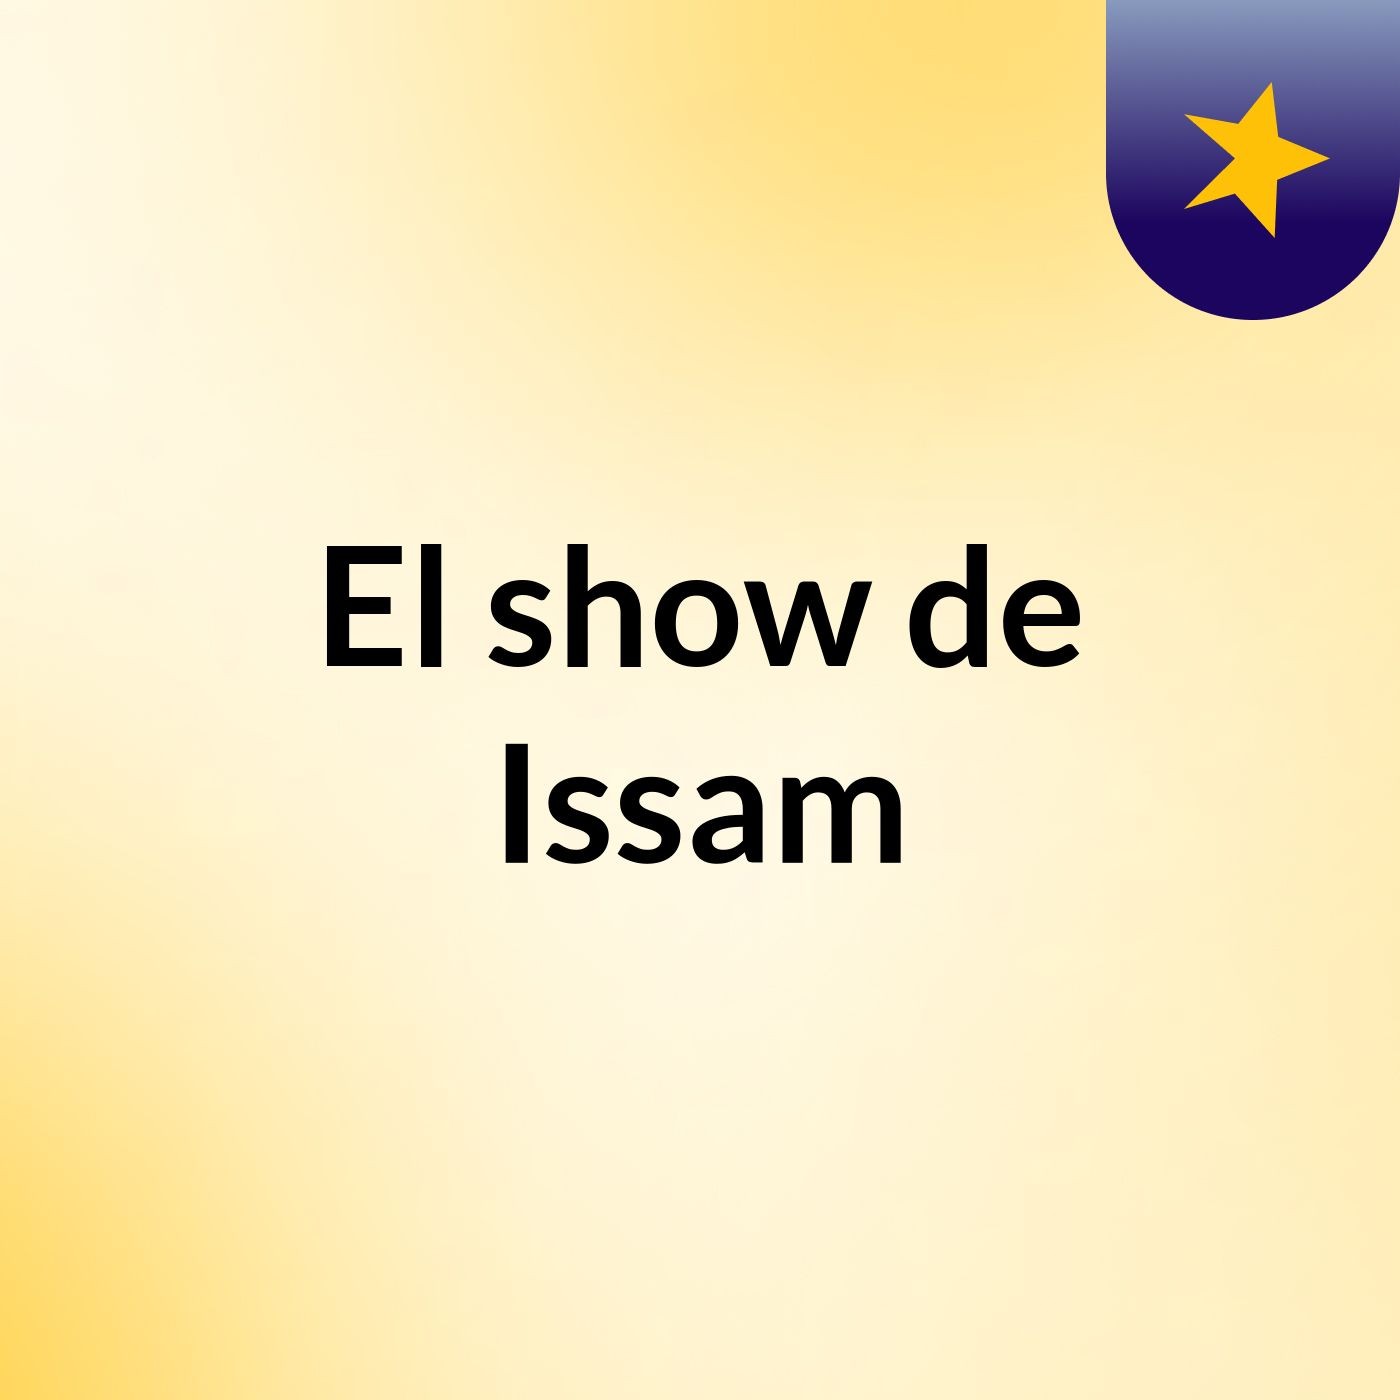 El show de Issam